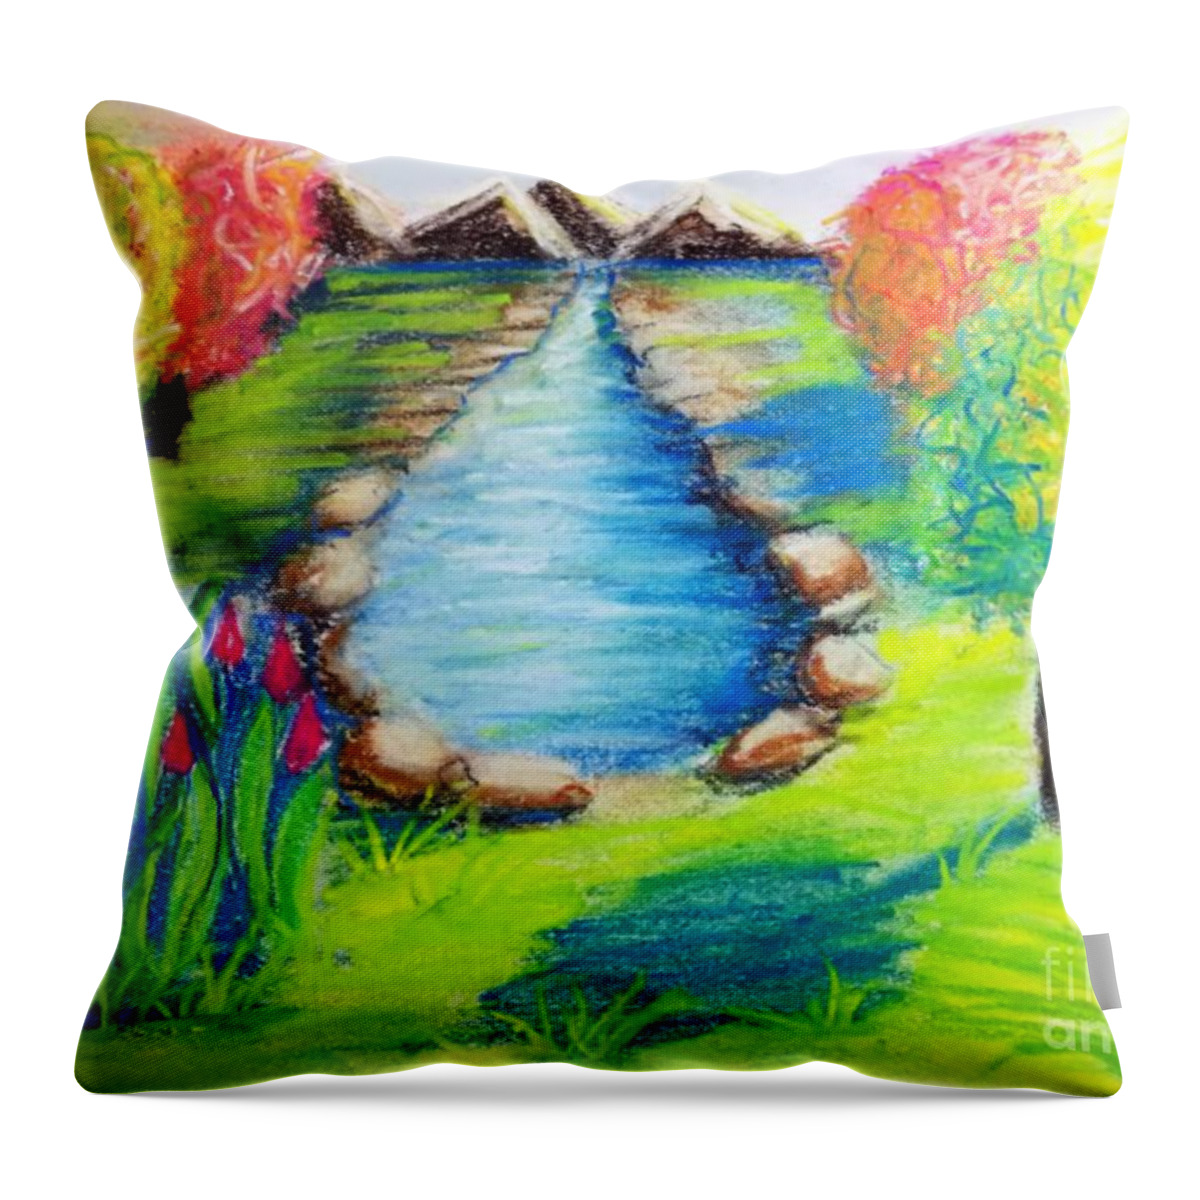 Digital Art Throw Pillow featuring the digital art Little Dam II Landscape Artwork by Delynn Addams by Delynn Addams